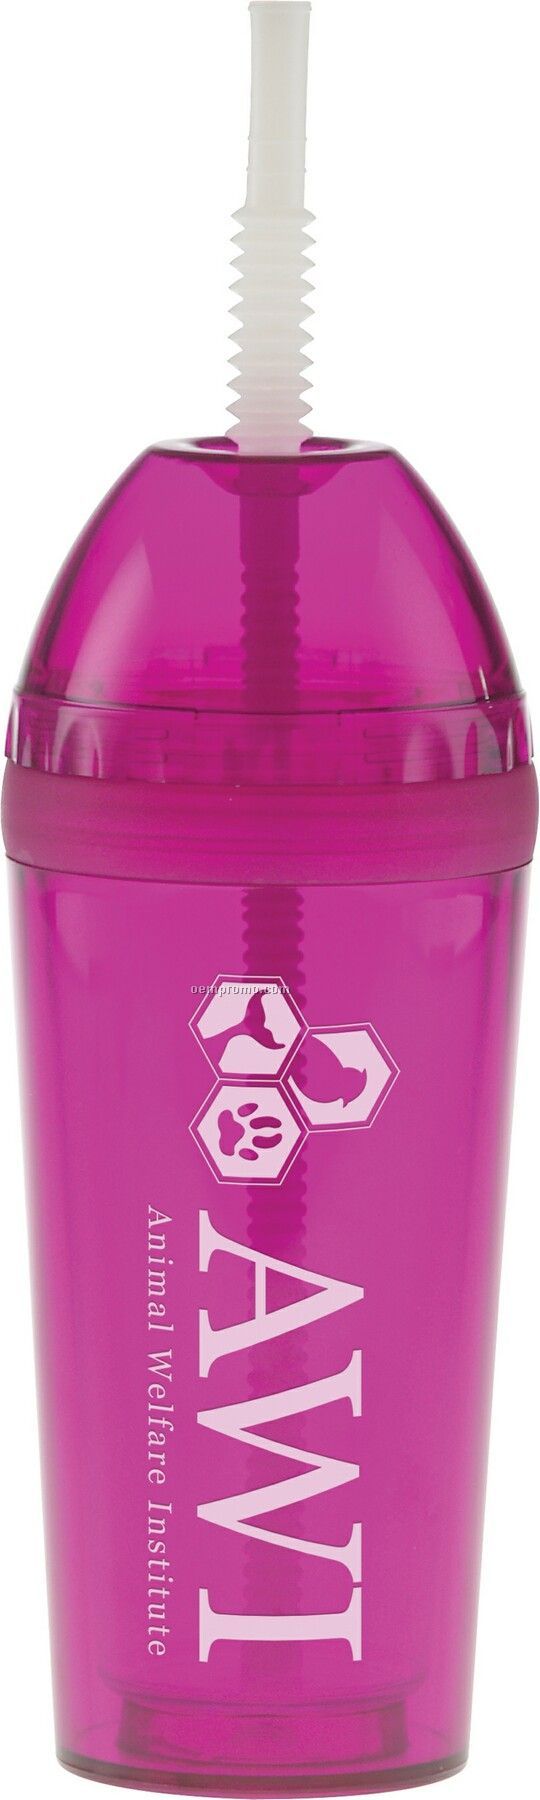 17 Oz. Purple Super Dome Bubble Cup